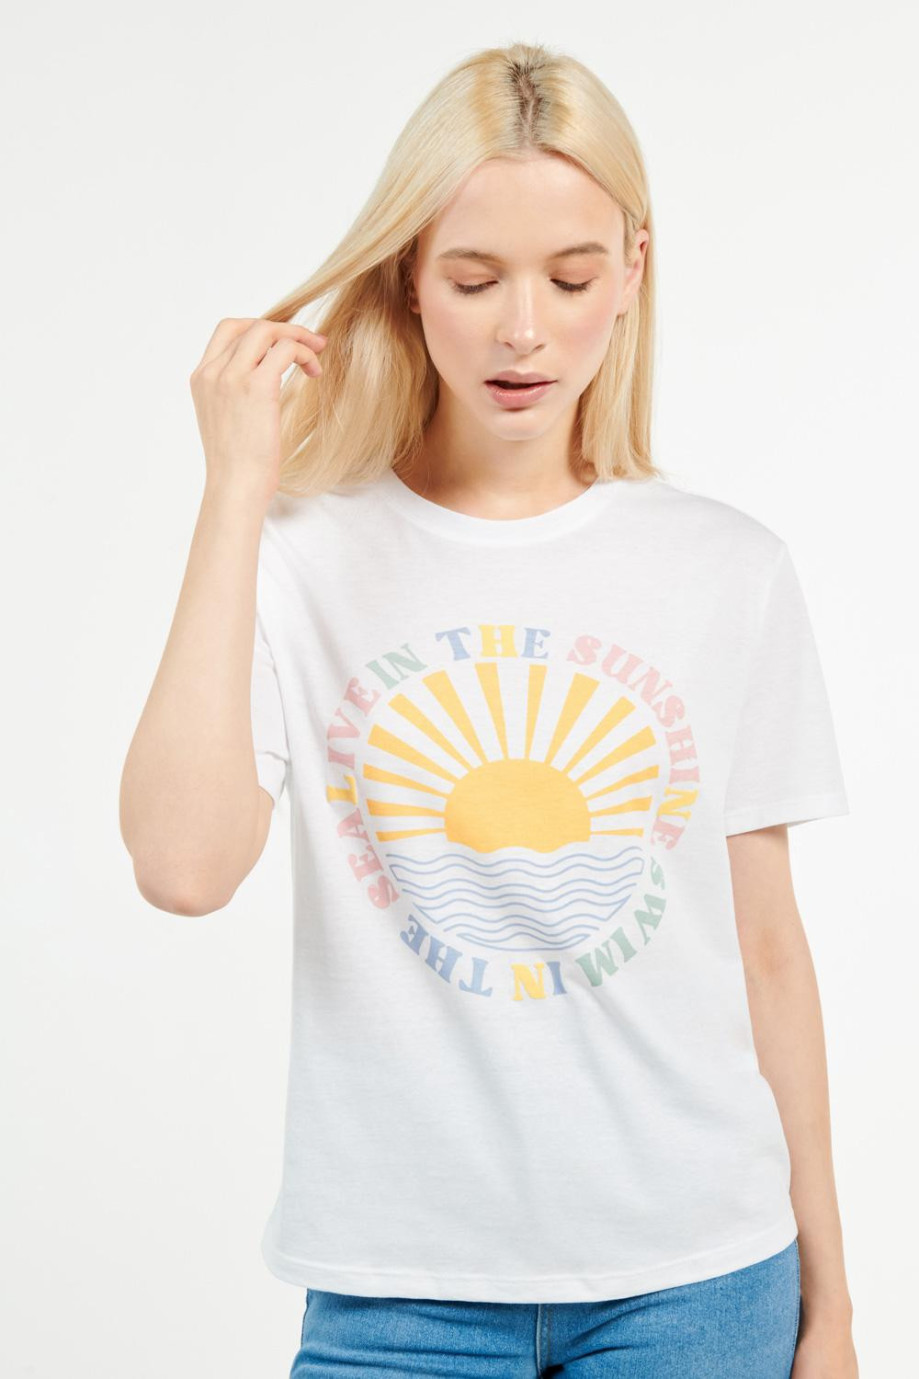 Camiseta crema para mujer manga corta con estampado de sol en frente.